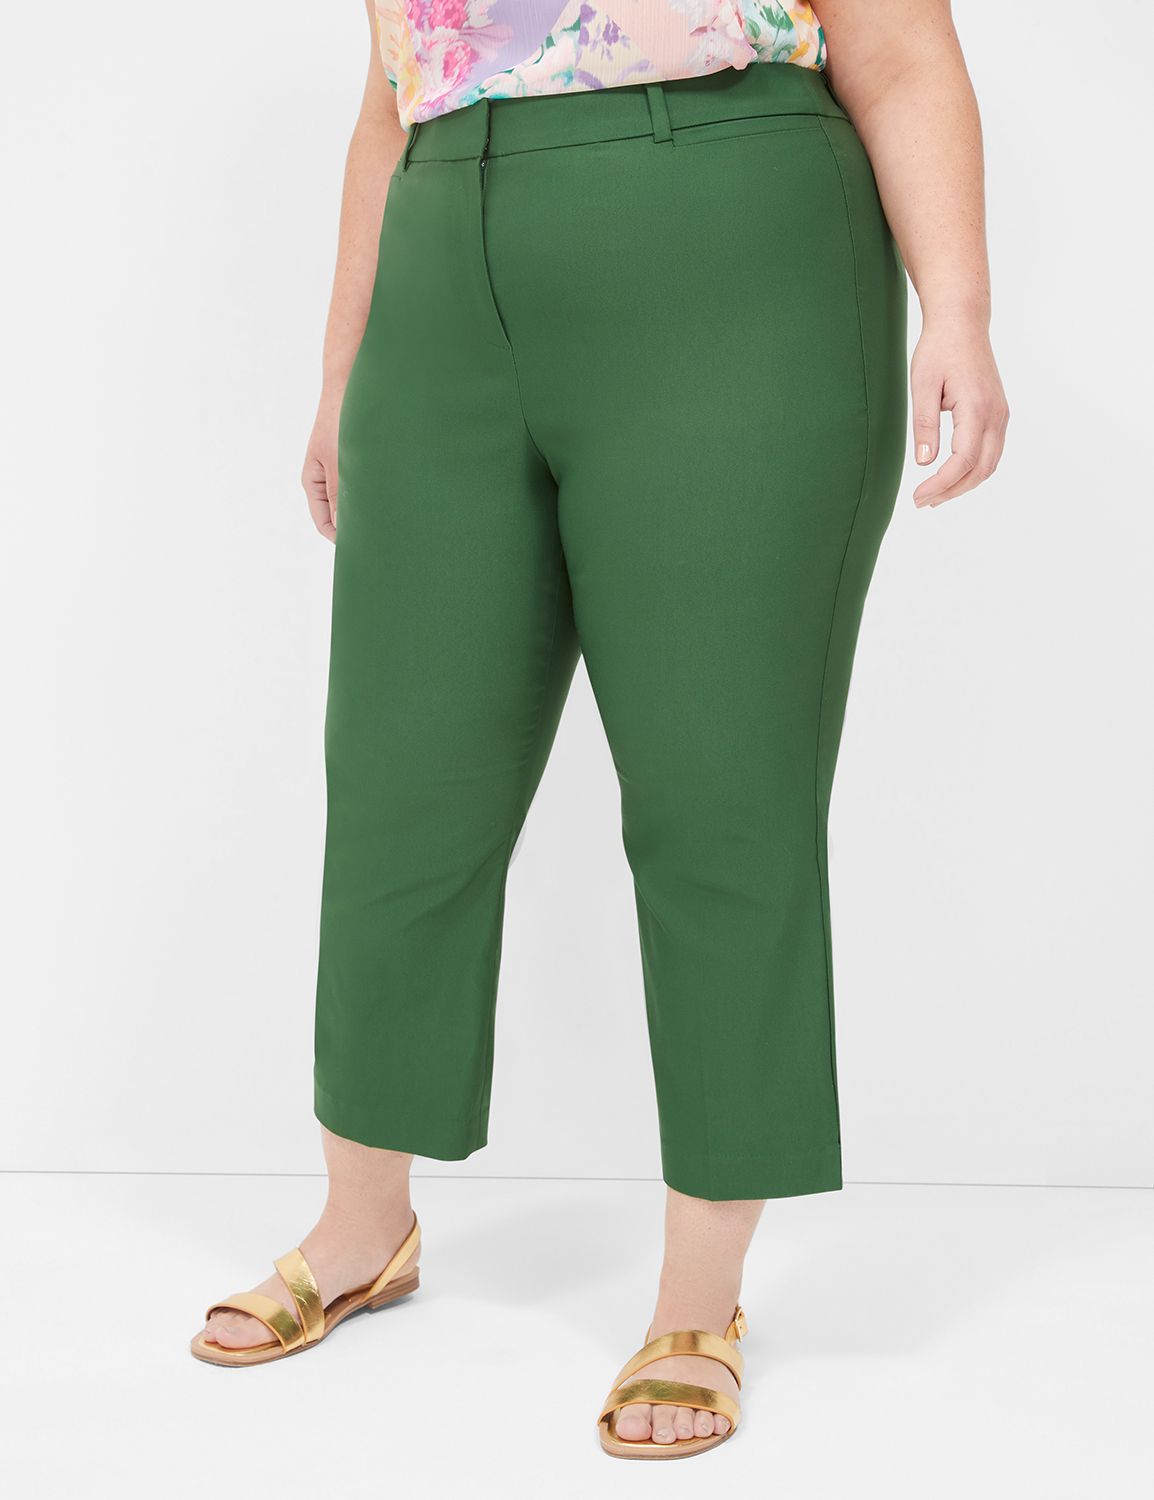 Plus Size Women's Capris & Crop Pants